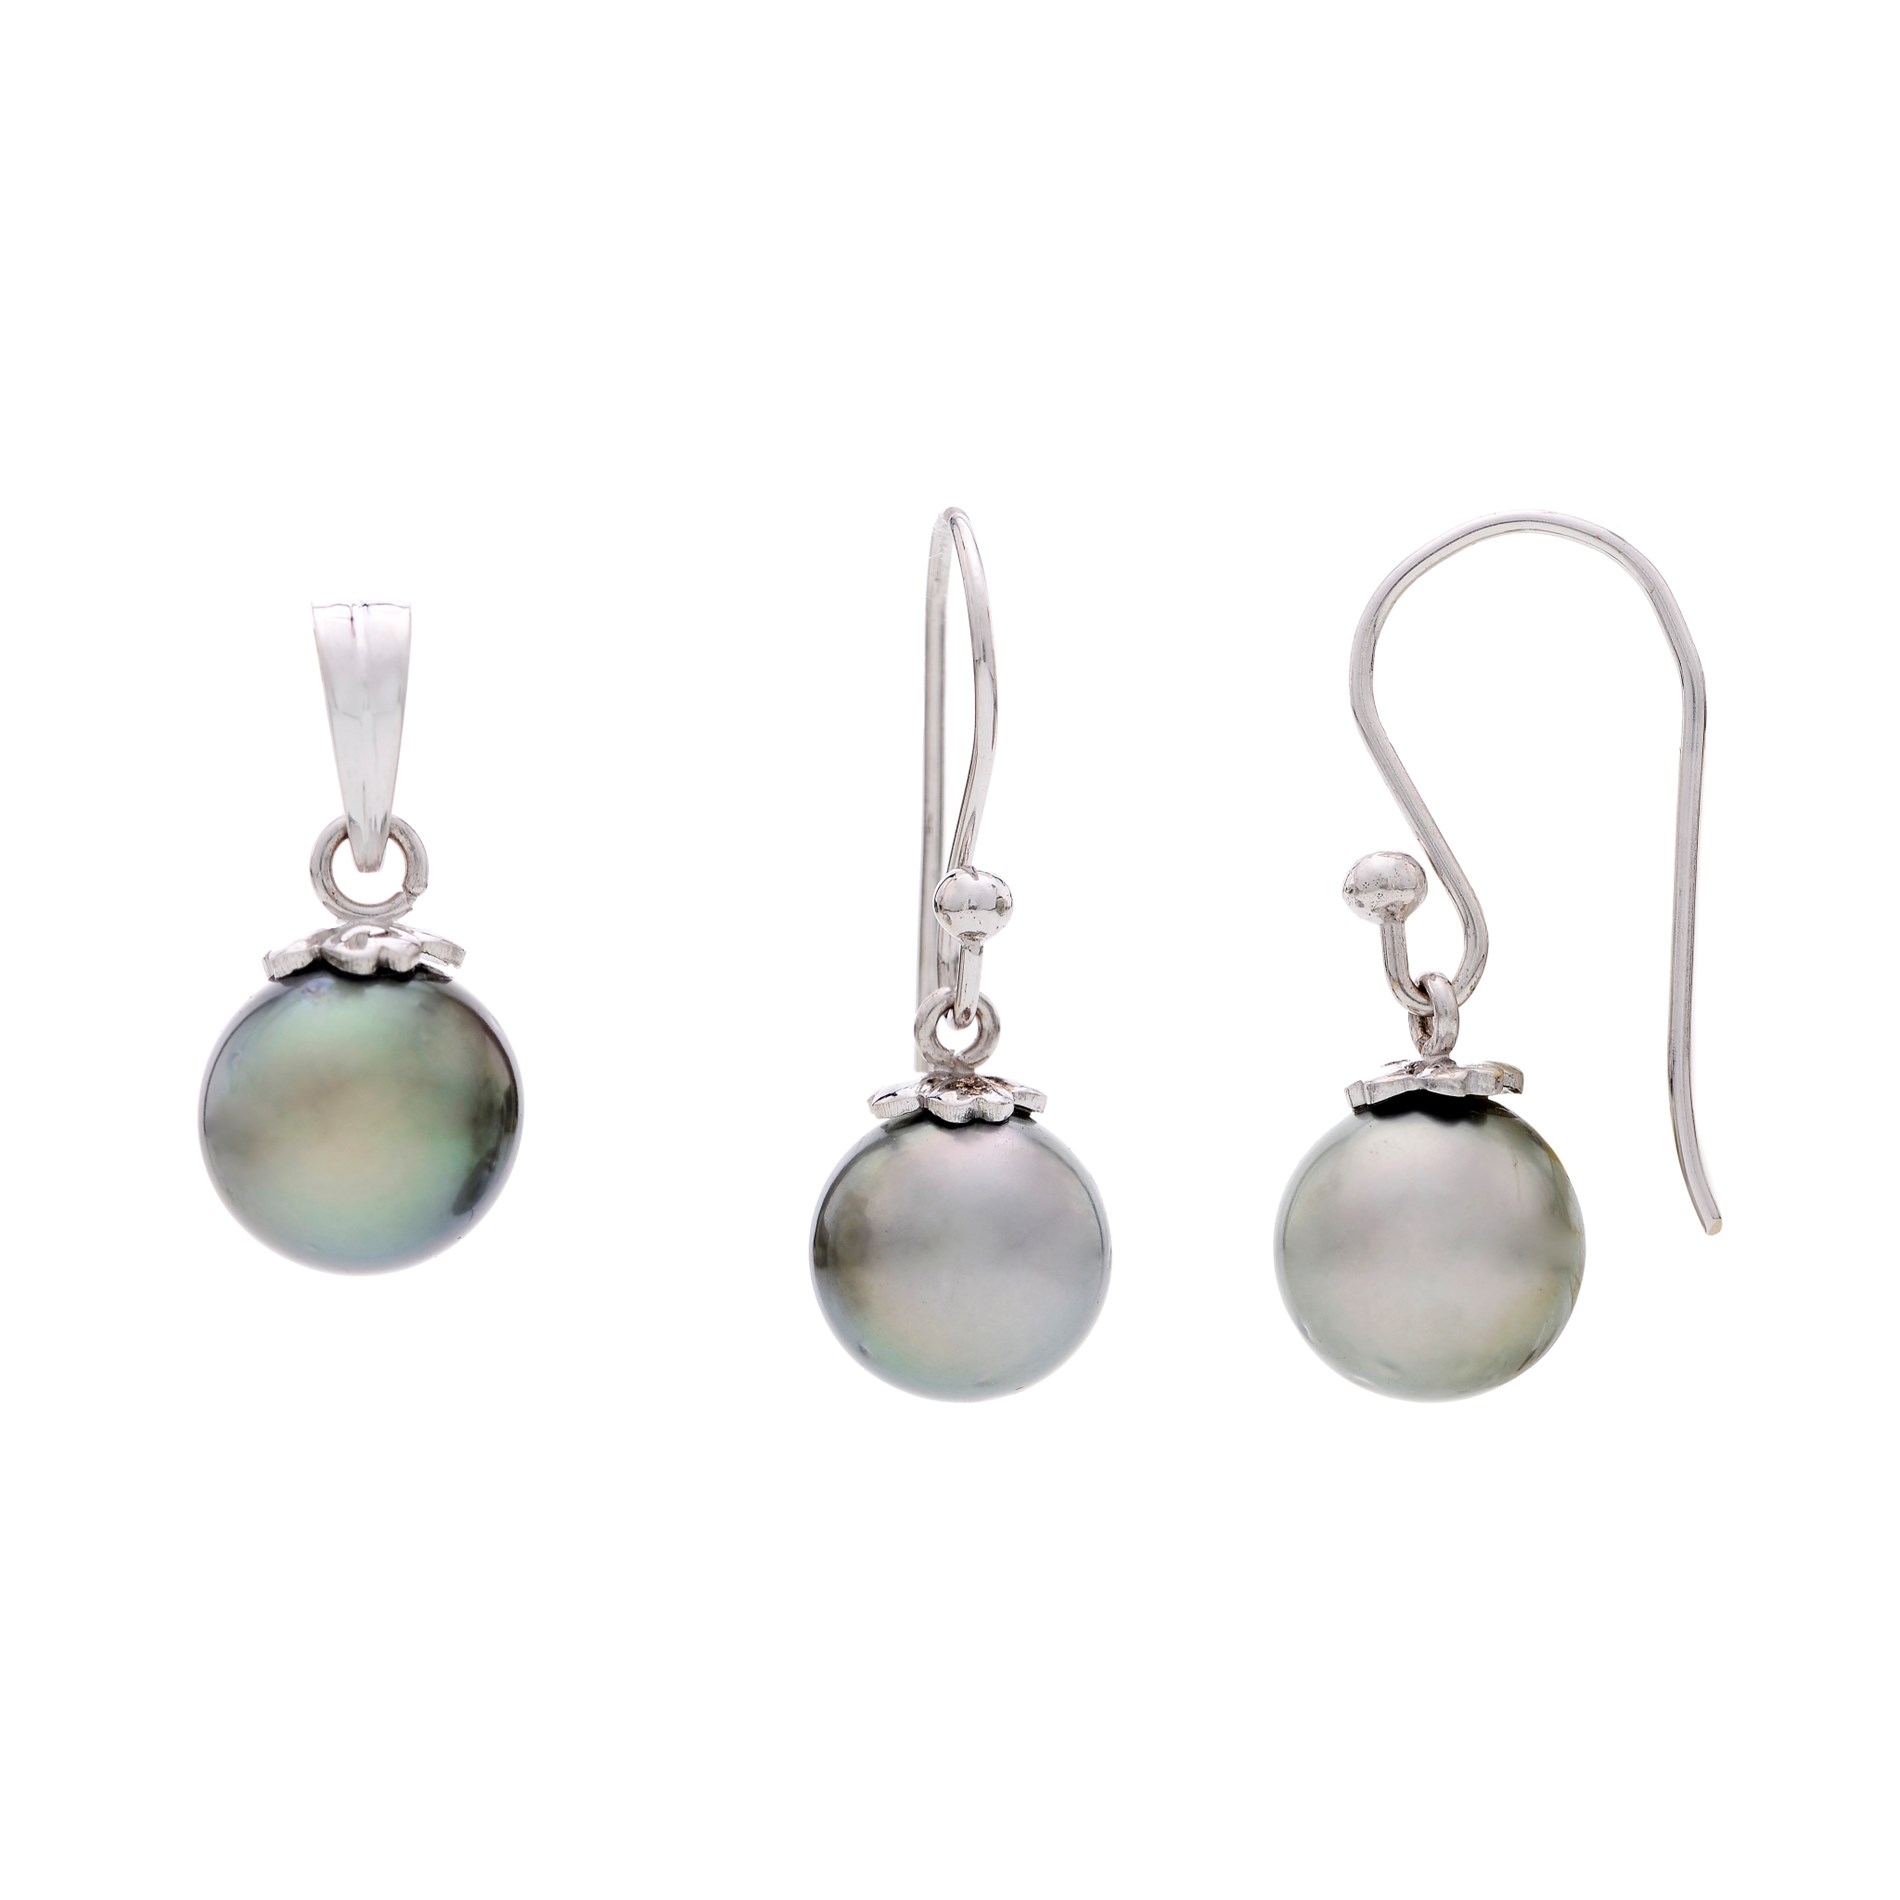 Share 81+ pearl earrings grey super hot - esthdonghoadian